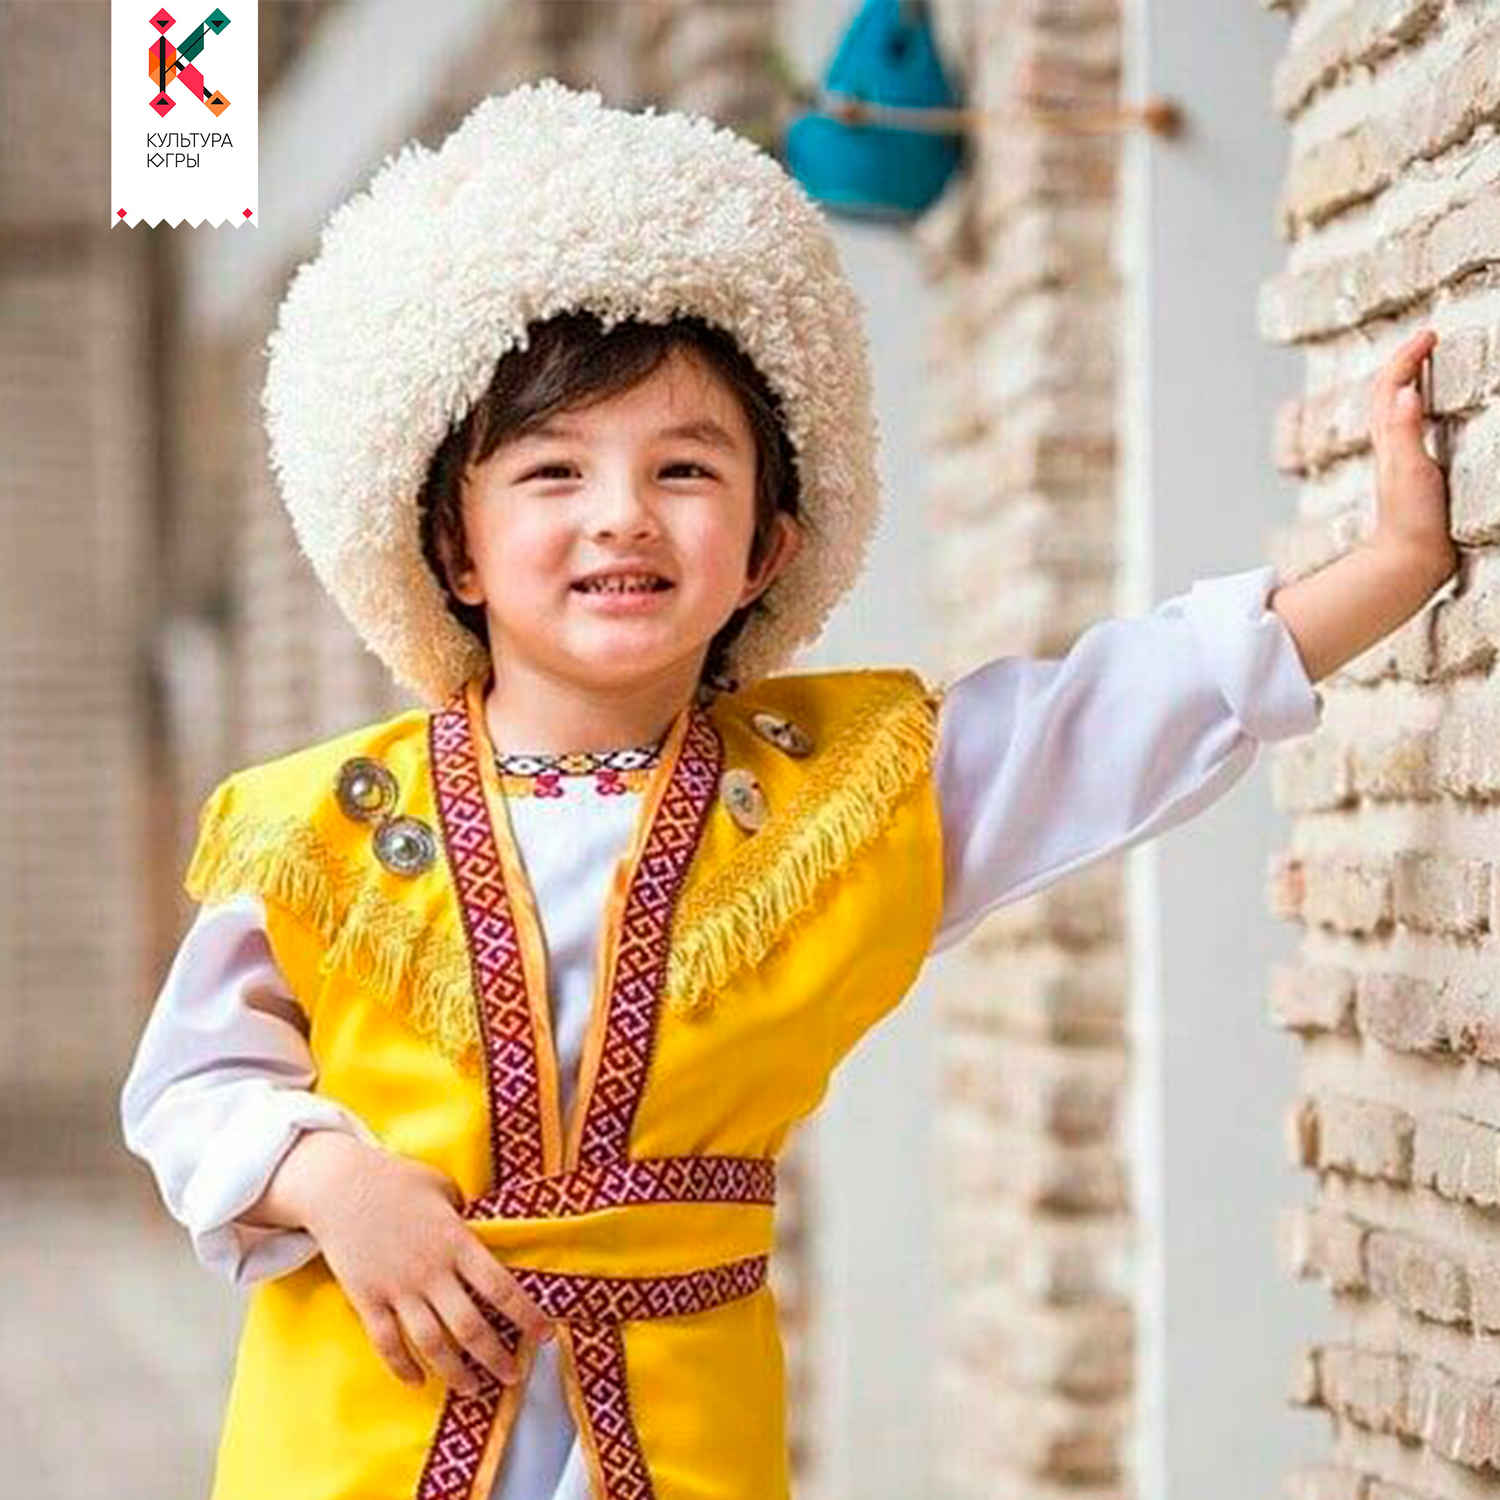 Детская национальная одежда. Национальный костюм туркменов. Национальный костюм Туркменистана мужской. Туркменский костюм мужской. Мальчик в национальном костюме.